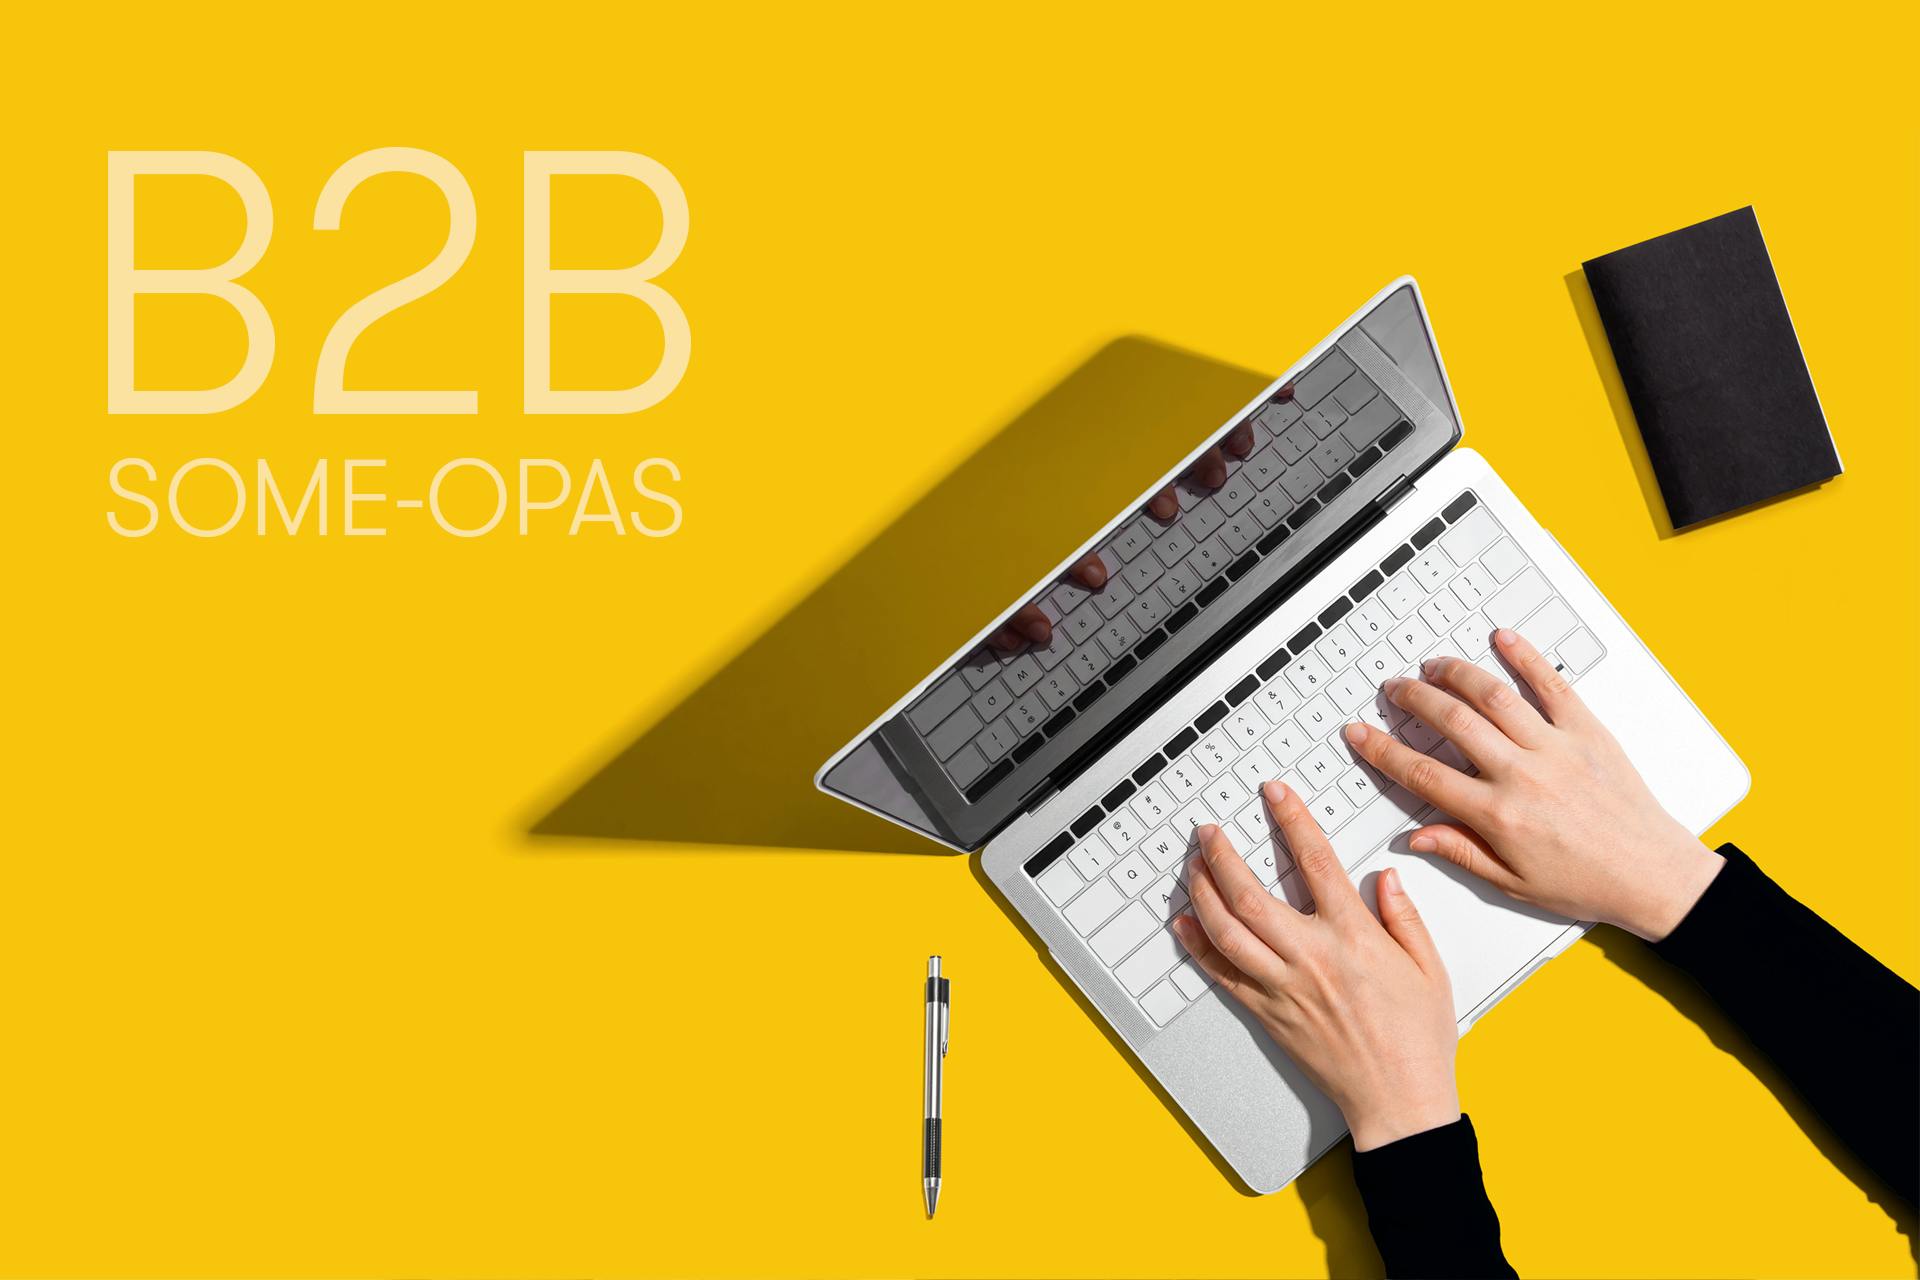 B2B some-opas, henkilön kädet tietokoneen näppäimistöllä ylhäältä kuvattuna